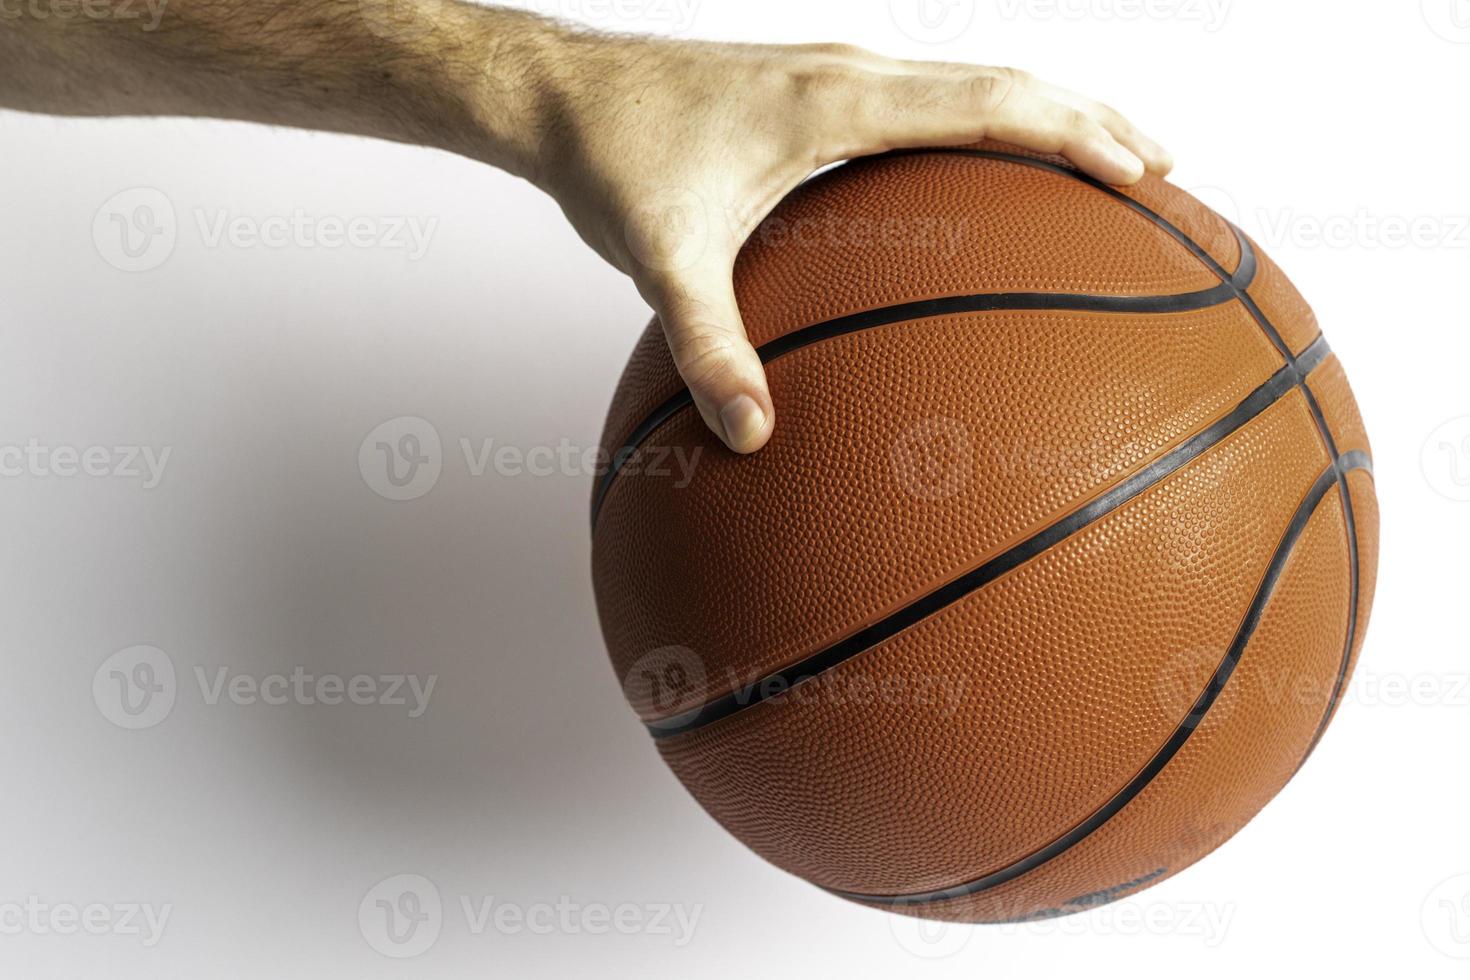 tenendo un pallone da basket foto